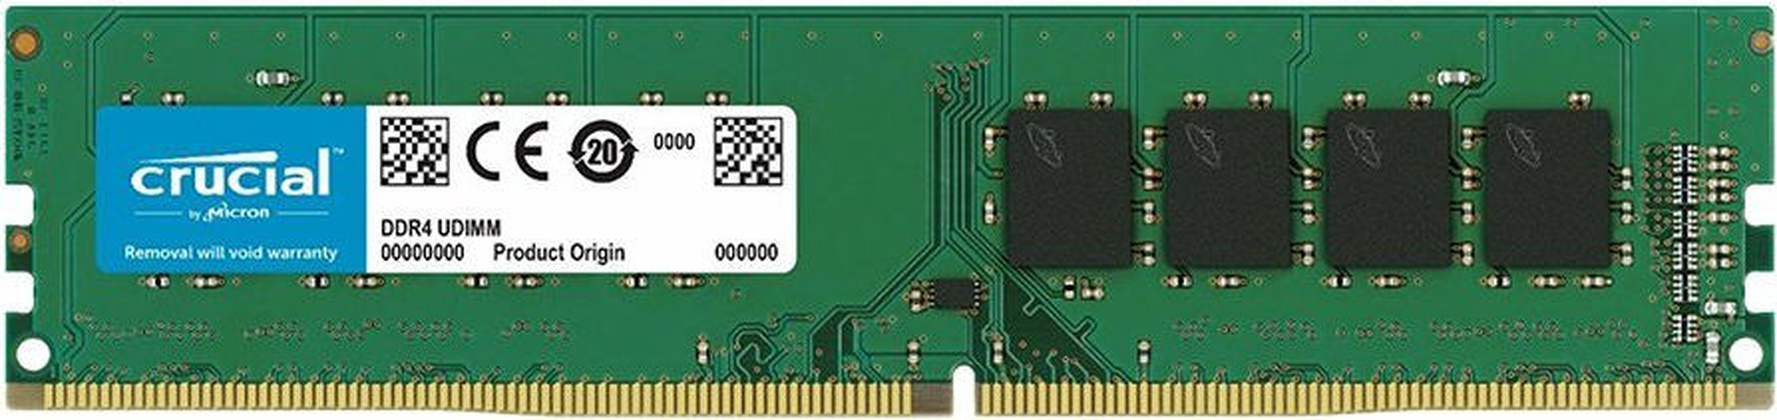 ОЗУ Crucial CB8GU2666 DDR4 8 Гб (1x8 Гб)